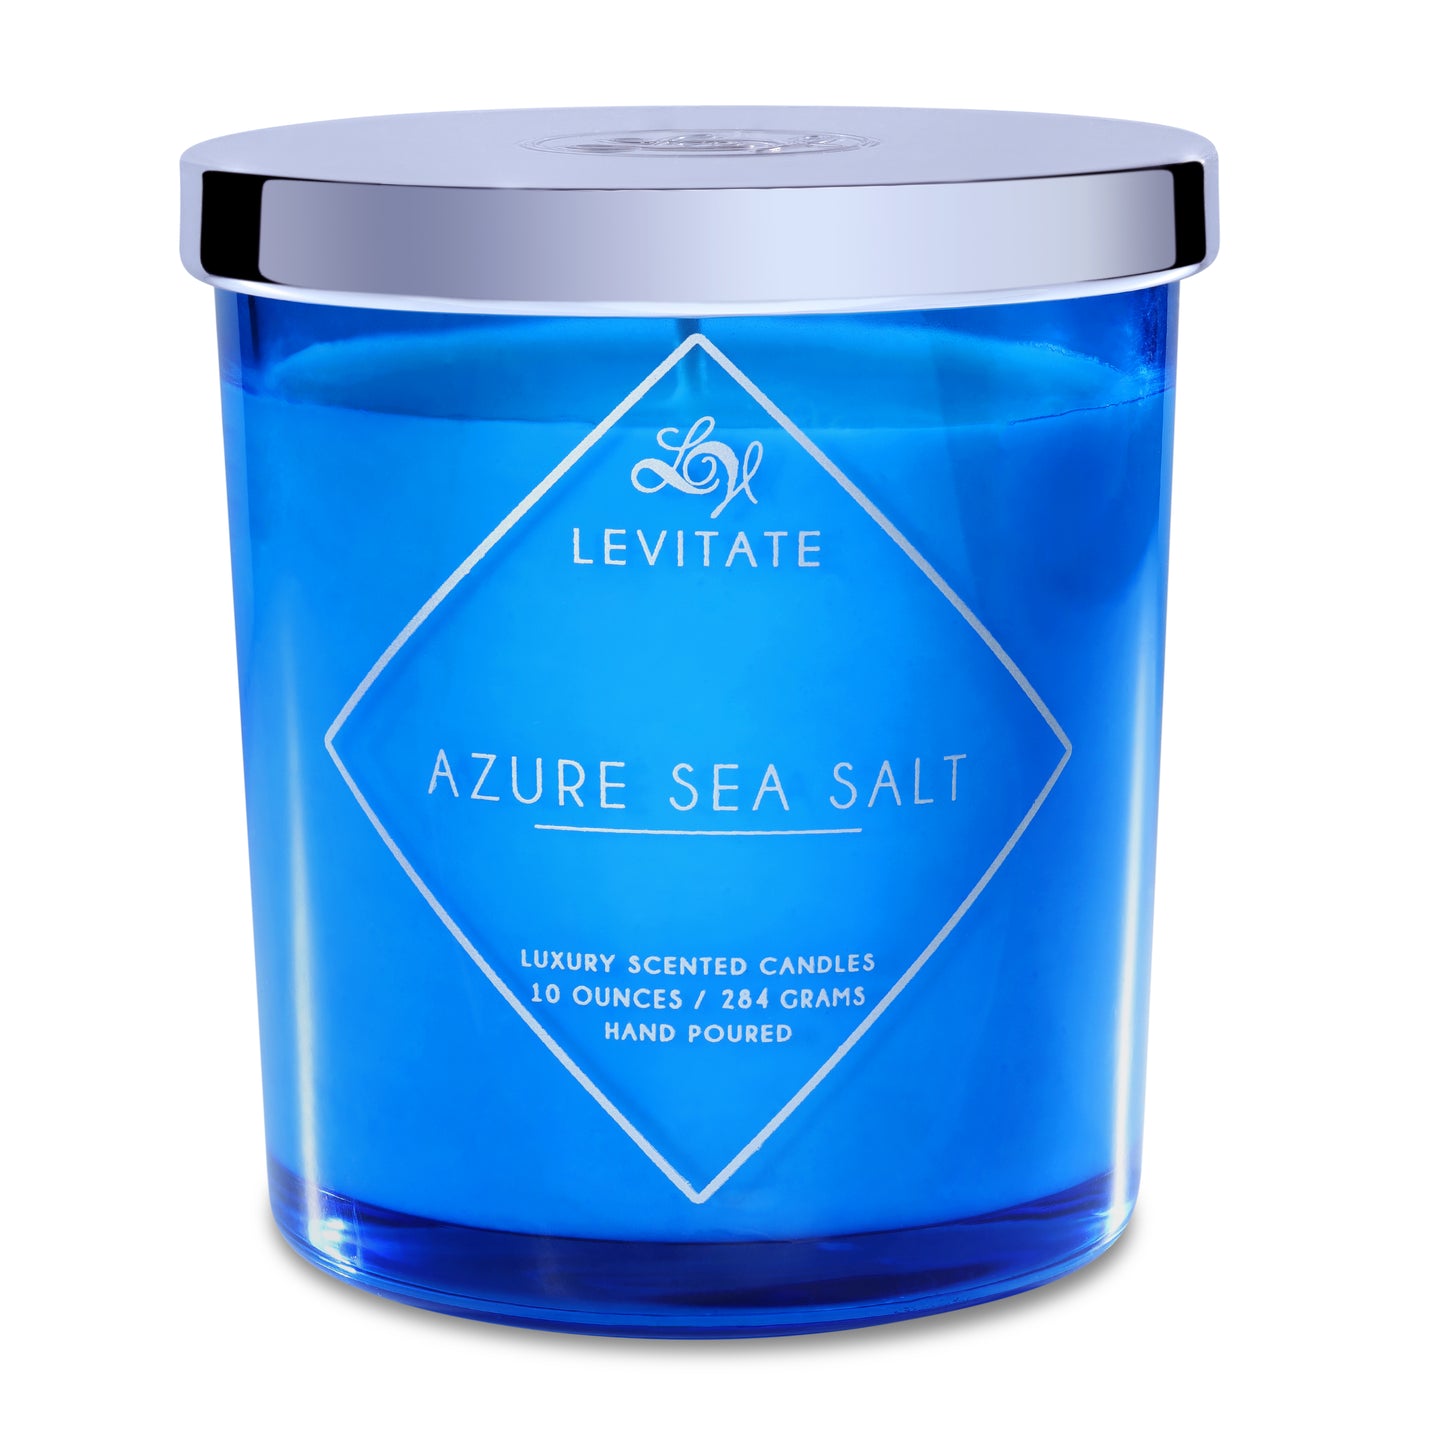 Levitate Azure Sea Salt